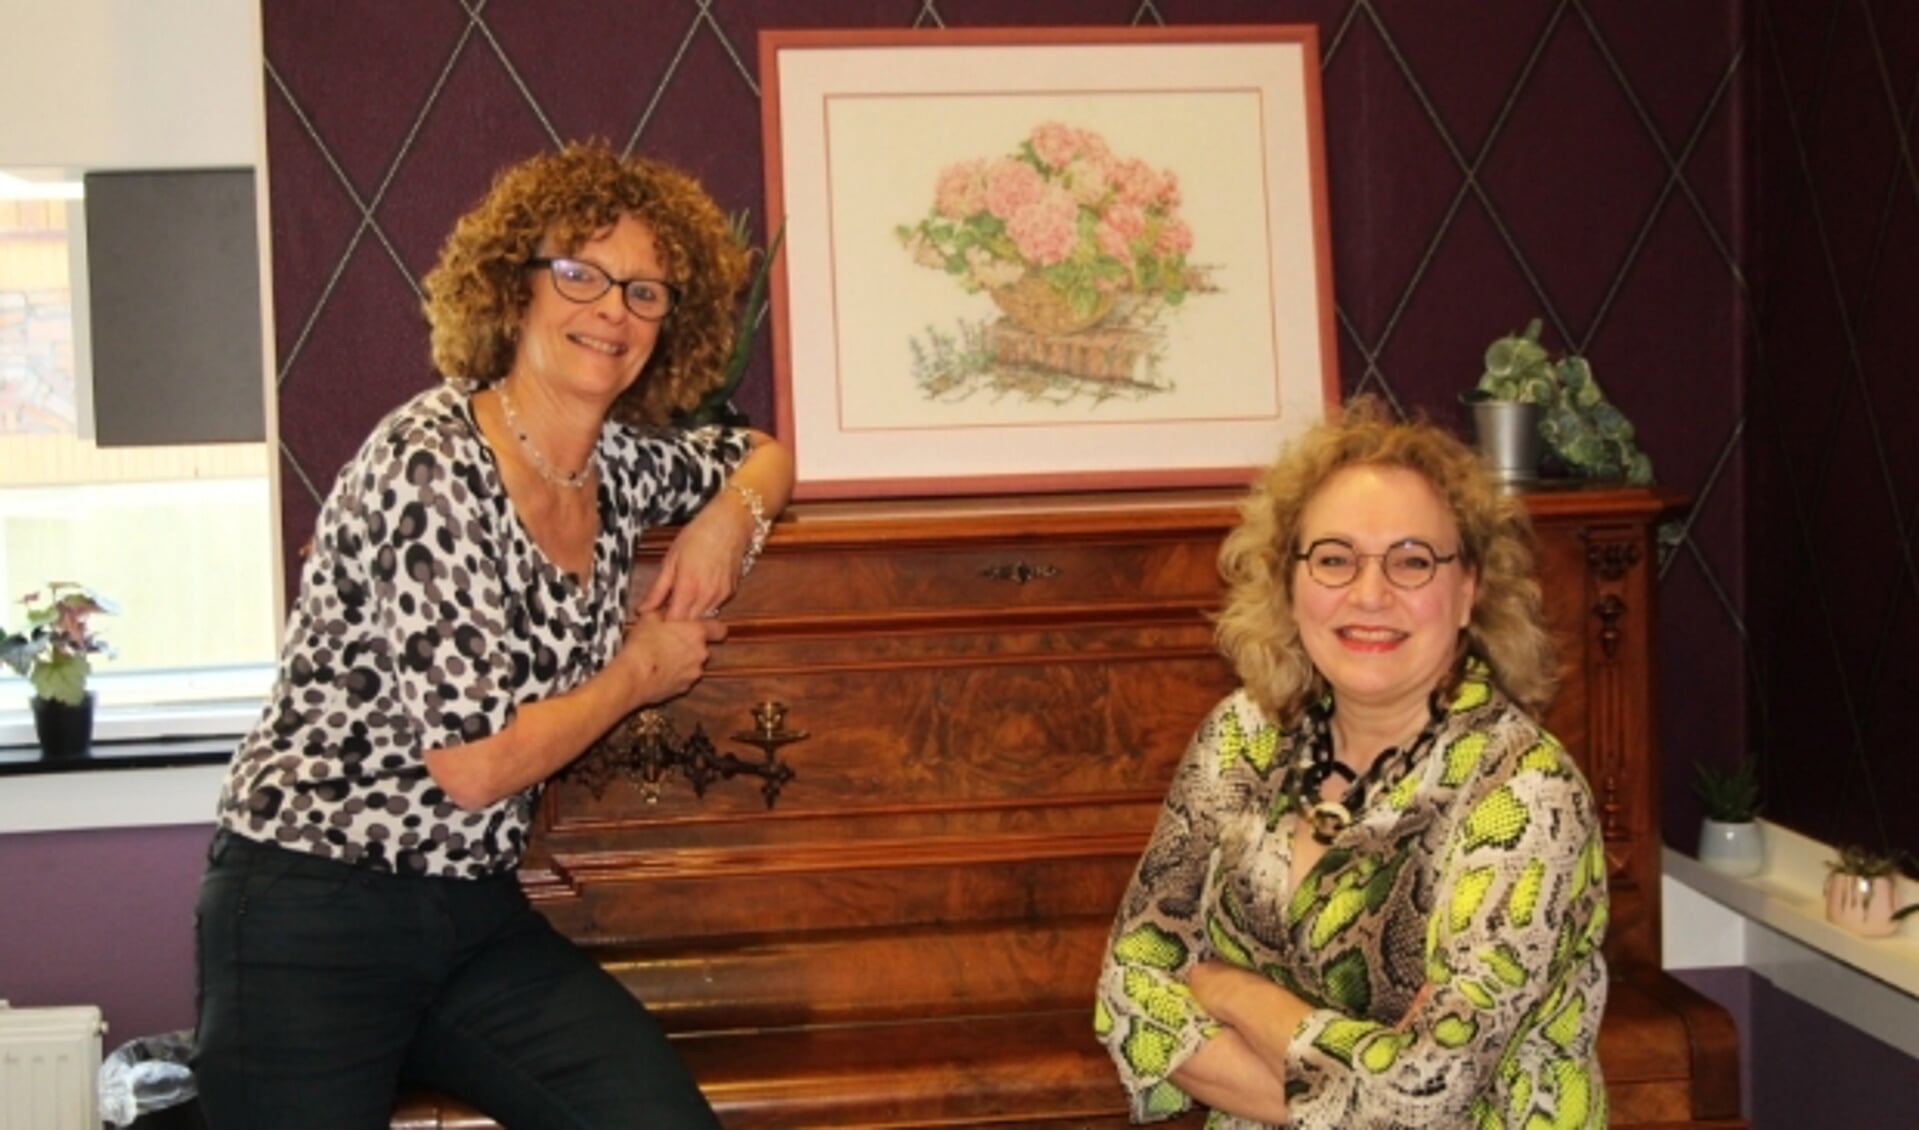 Jeannette Starrenburg en Anastasia van der Lugt krijgen steeds meer ideeën over het Vrouwendagprogramma. (Foto: Lysette Vewegen)